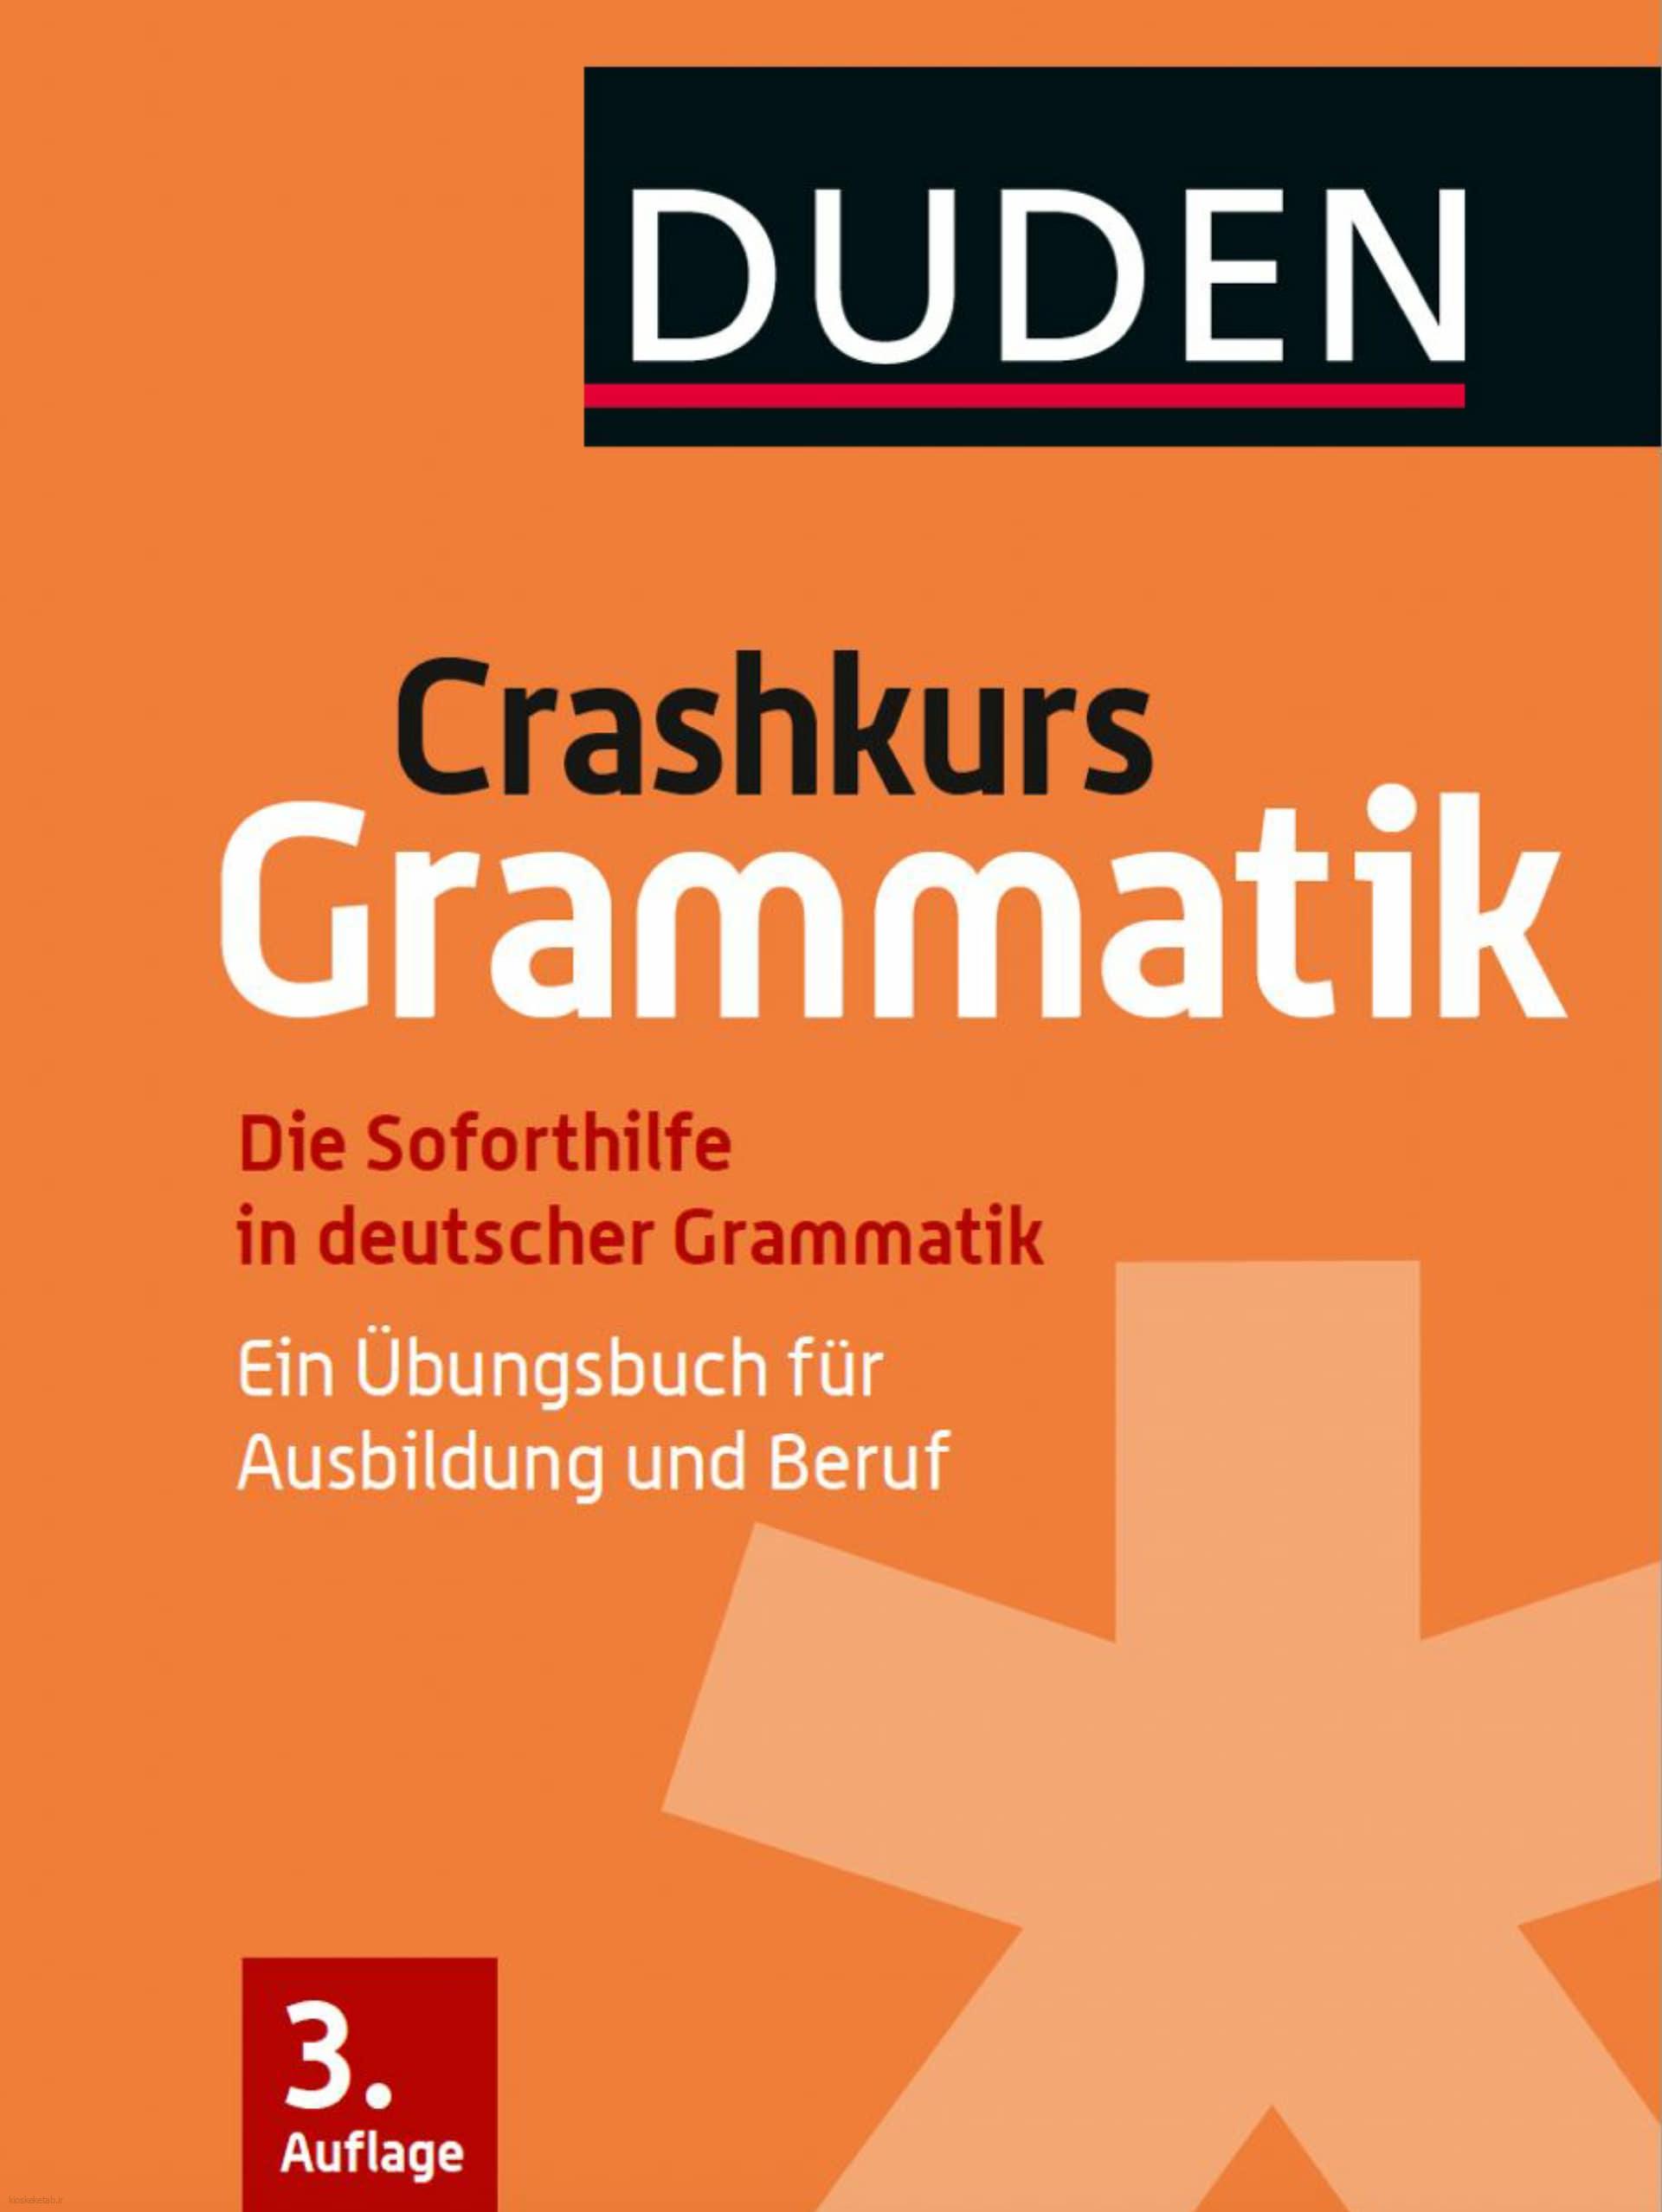 دانلود کتاب آلمانیduden crashkurs grammatik